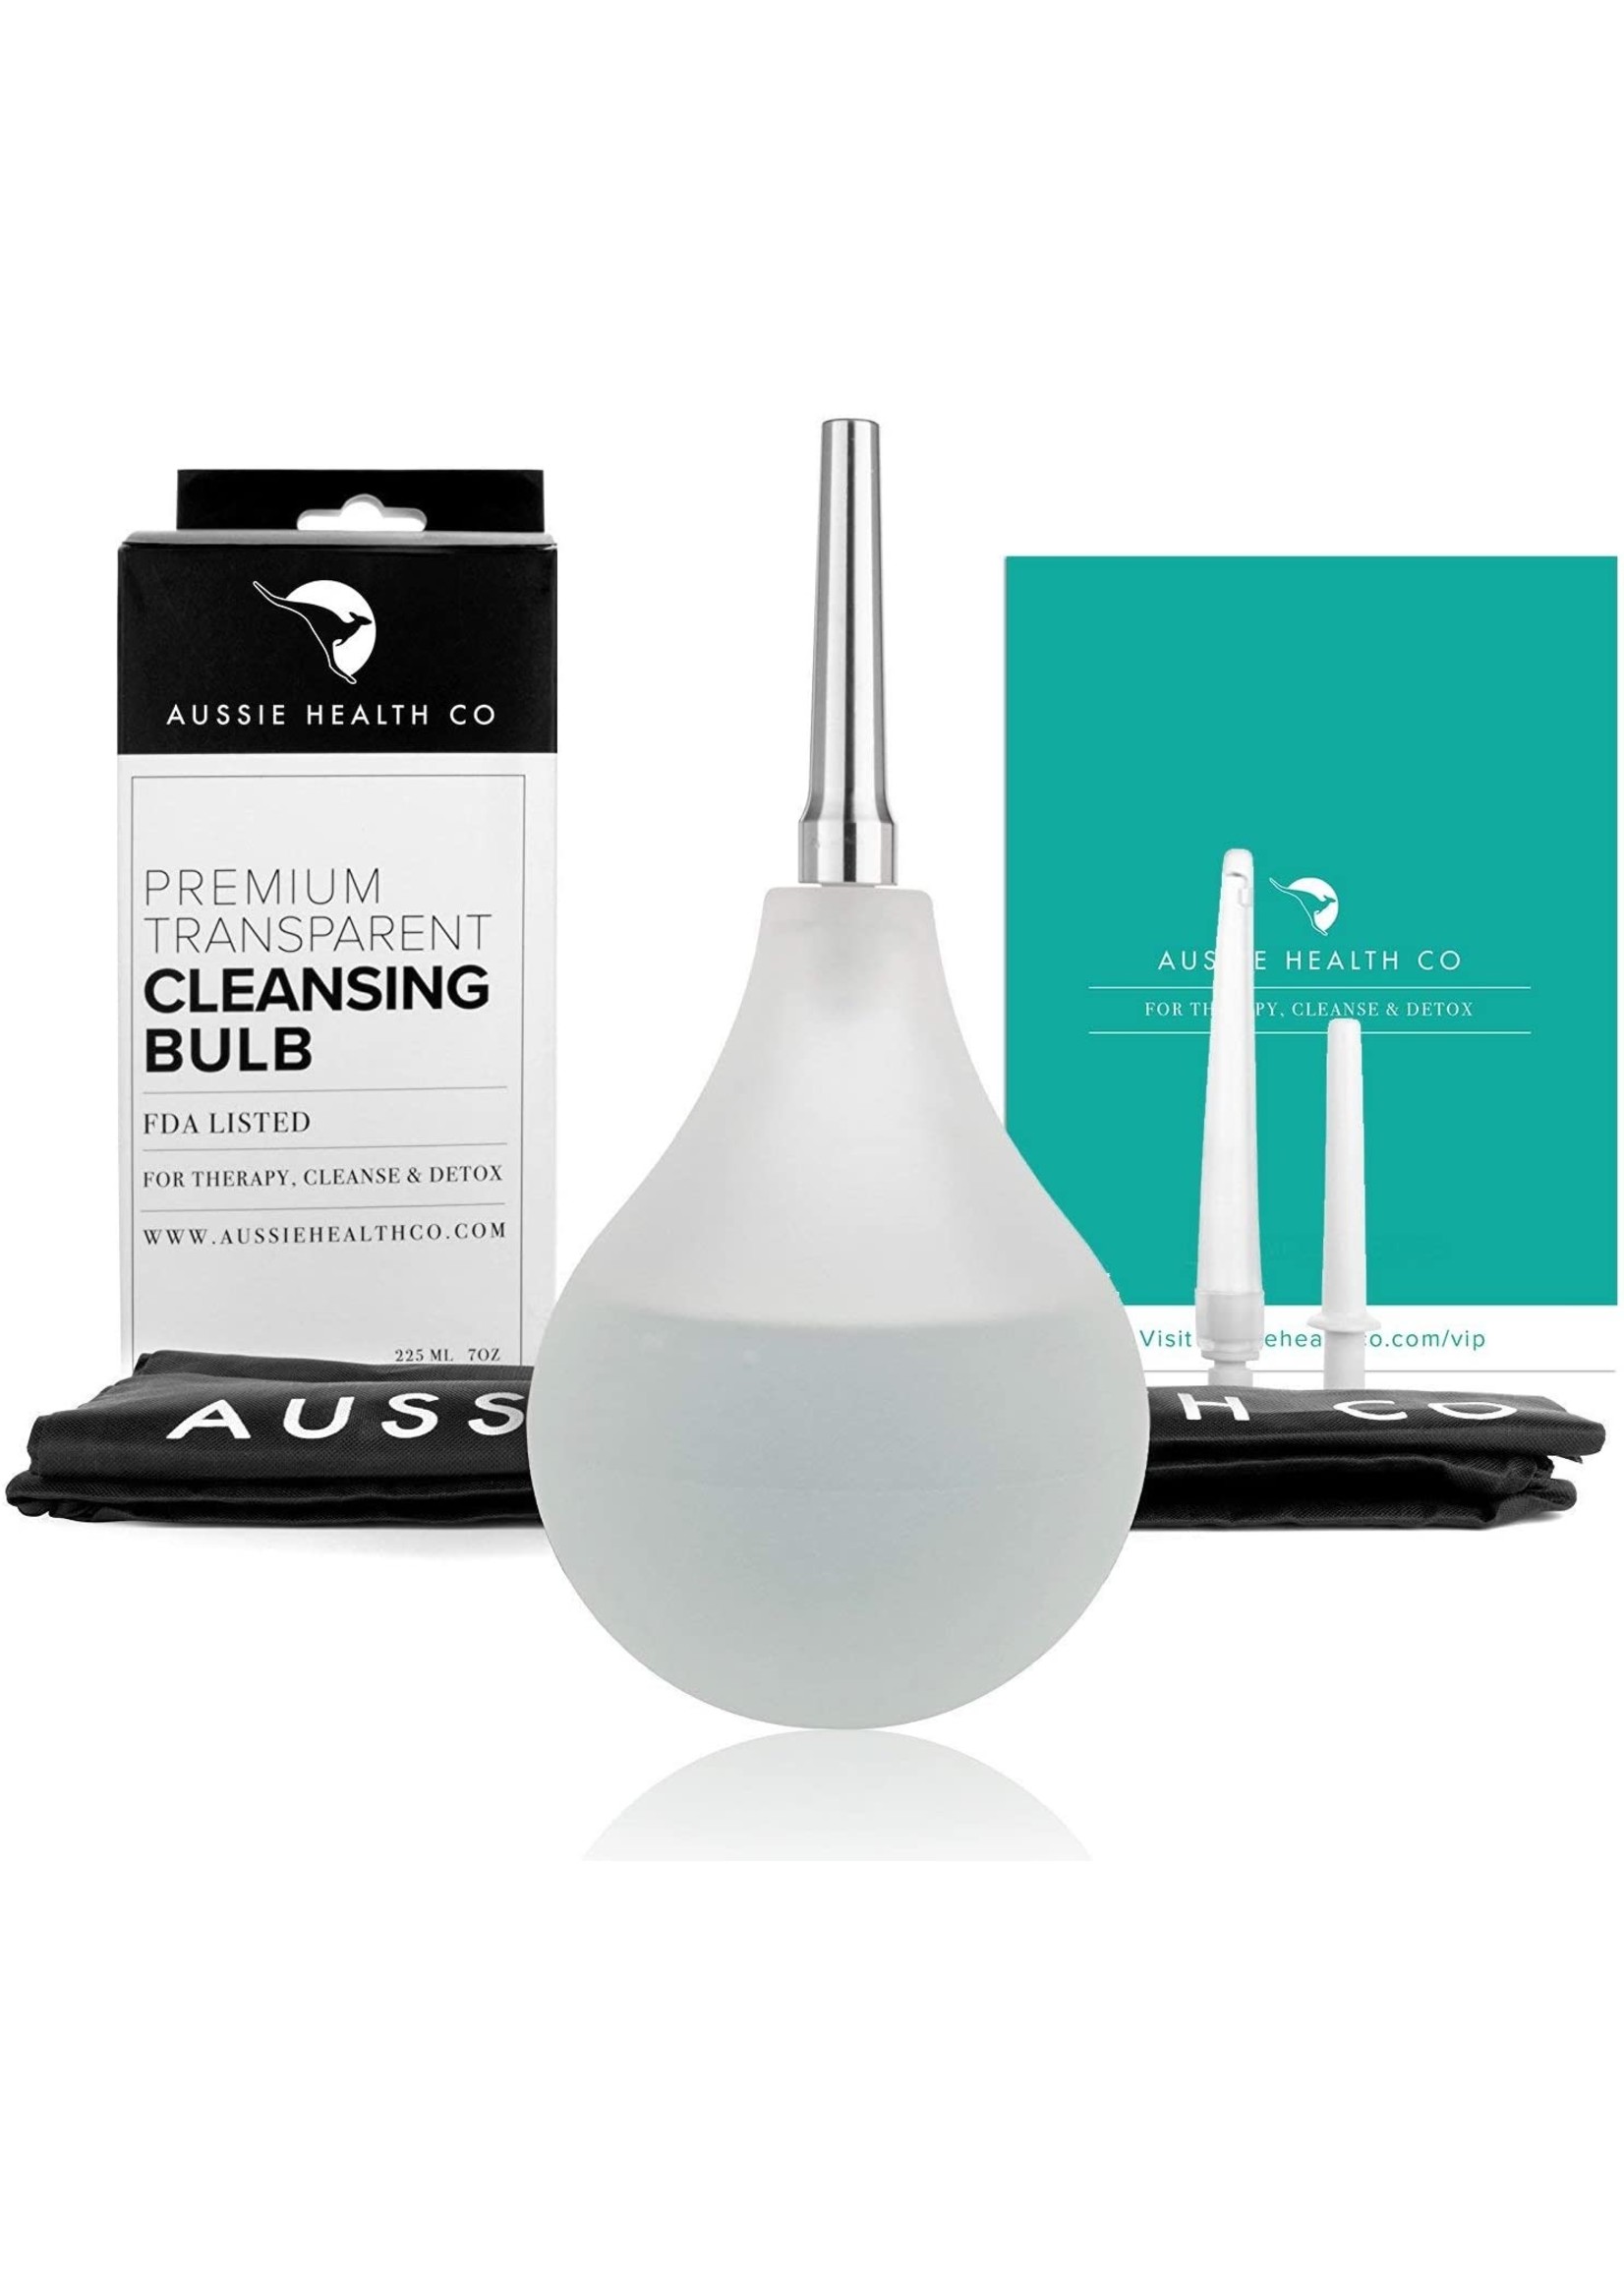 Aussie Health Co Clear Enema Bulb Kit - 7 oz Anal Douche